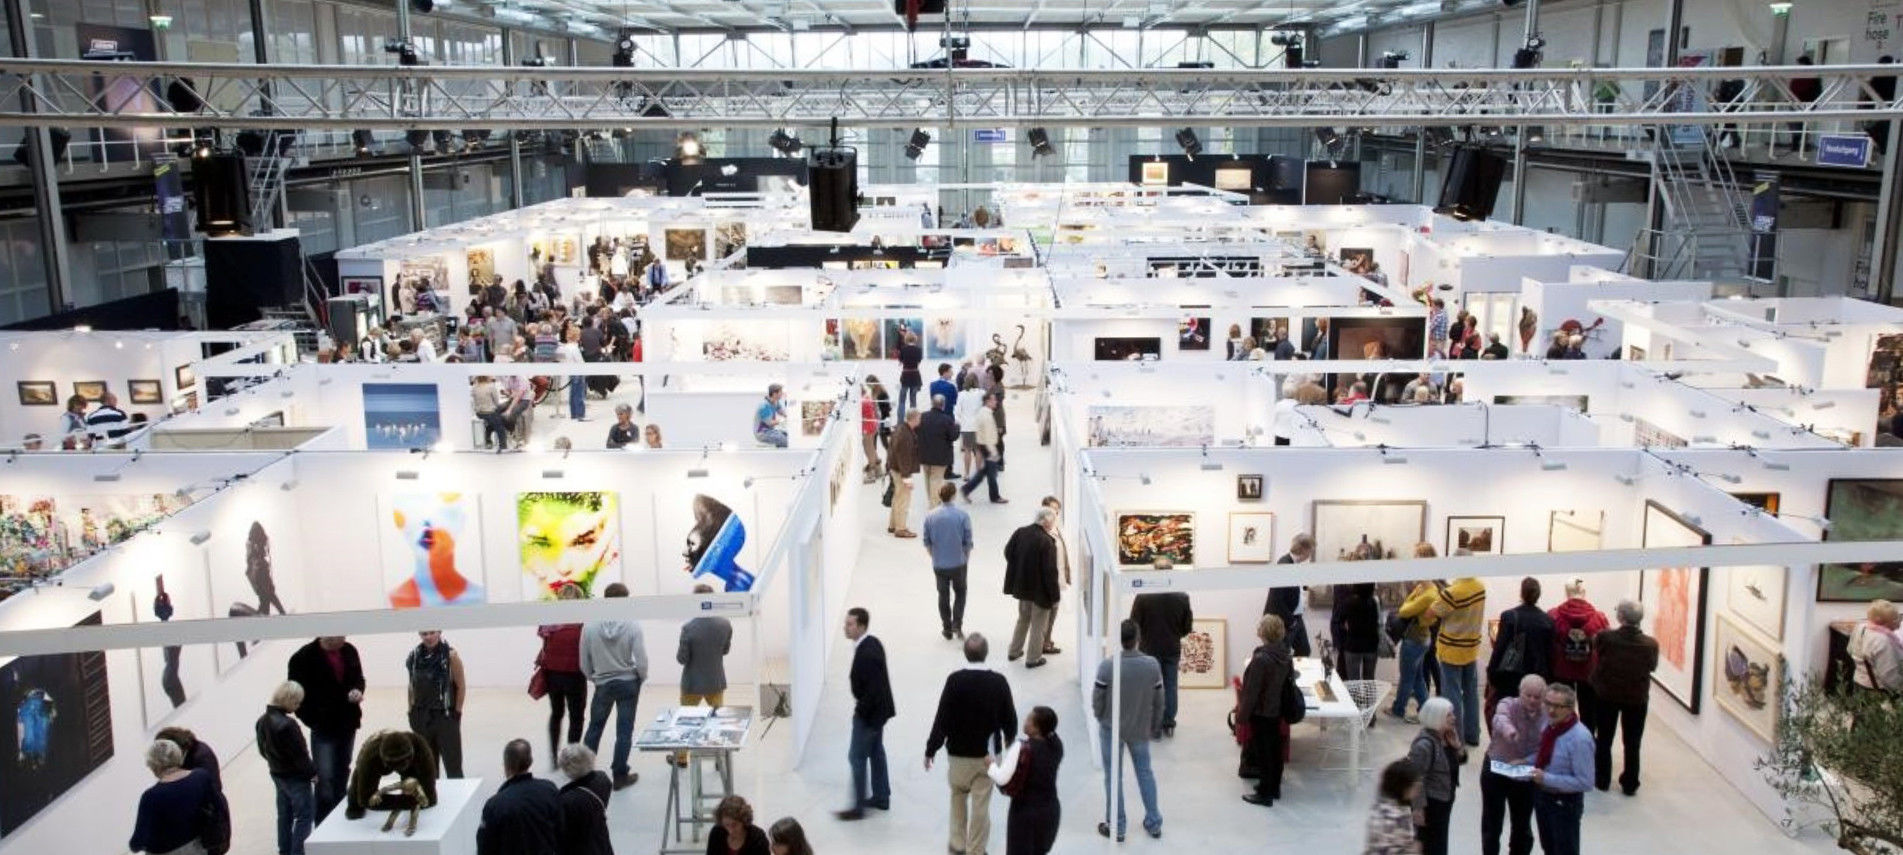 Overzichtsfoto van de jaarlijkse kunstbeurs Art The Hague met voornamelijk hedendaagse kunst